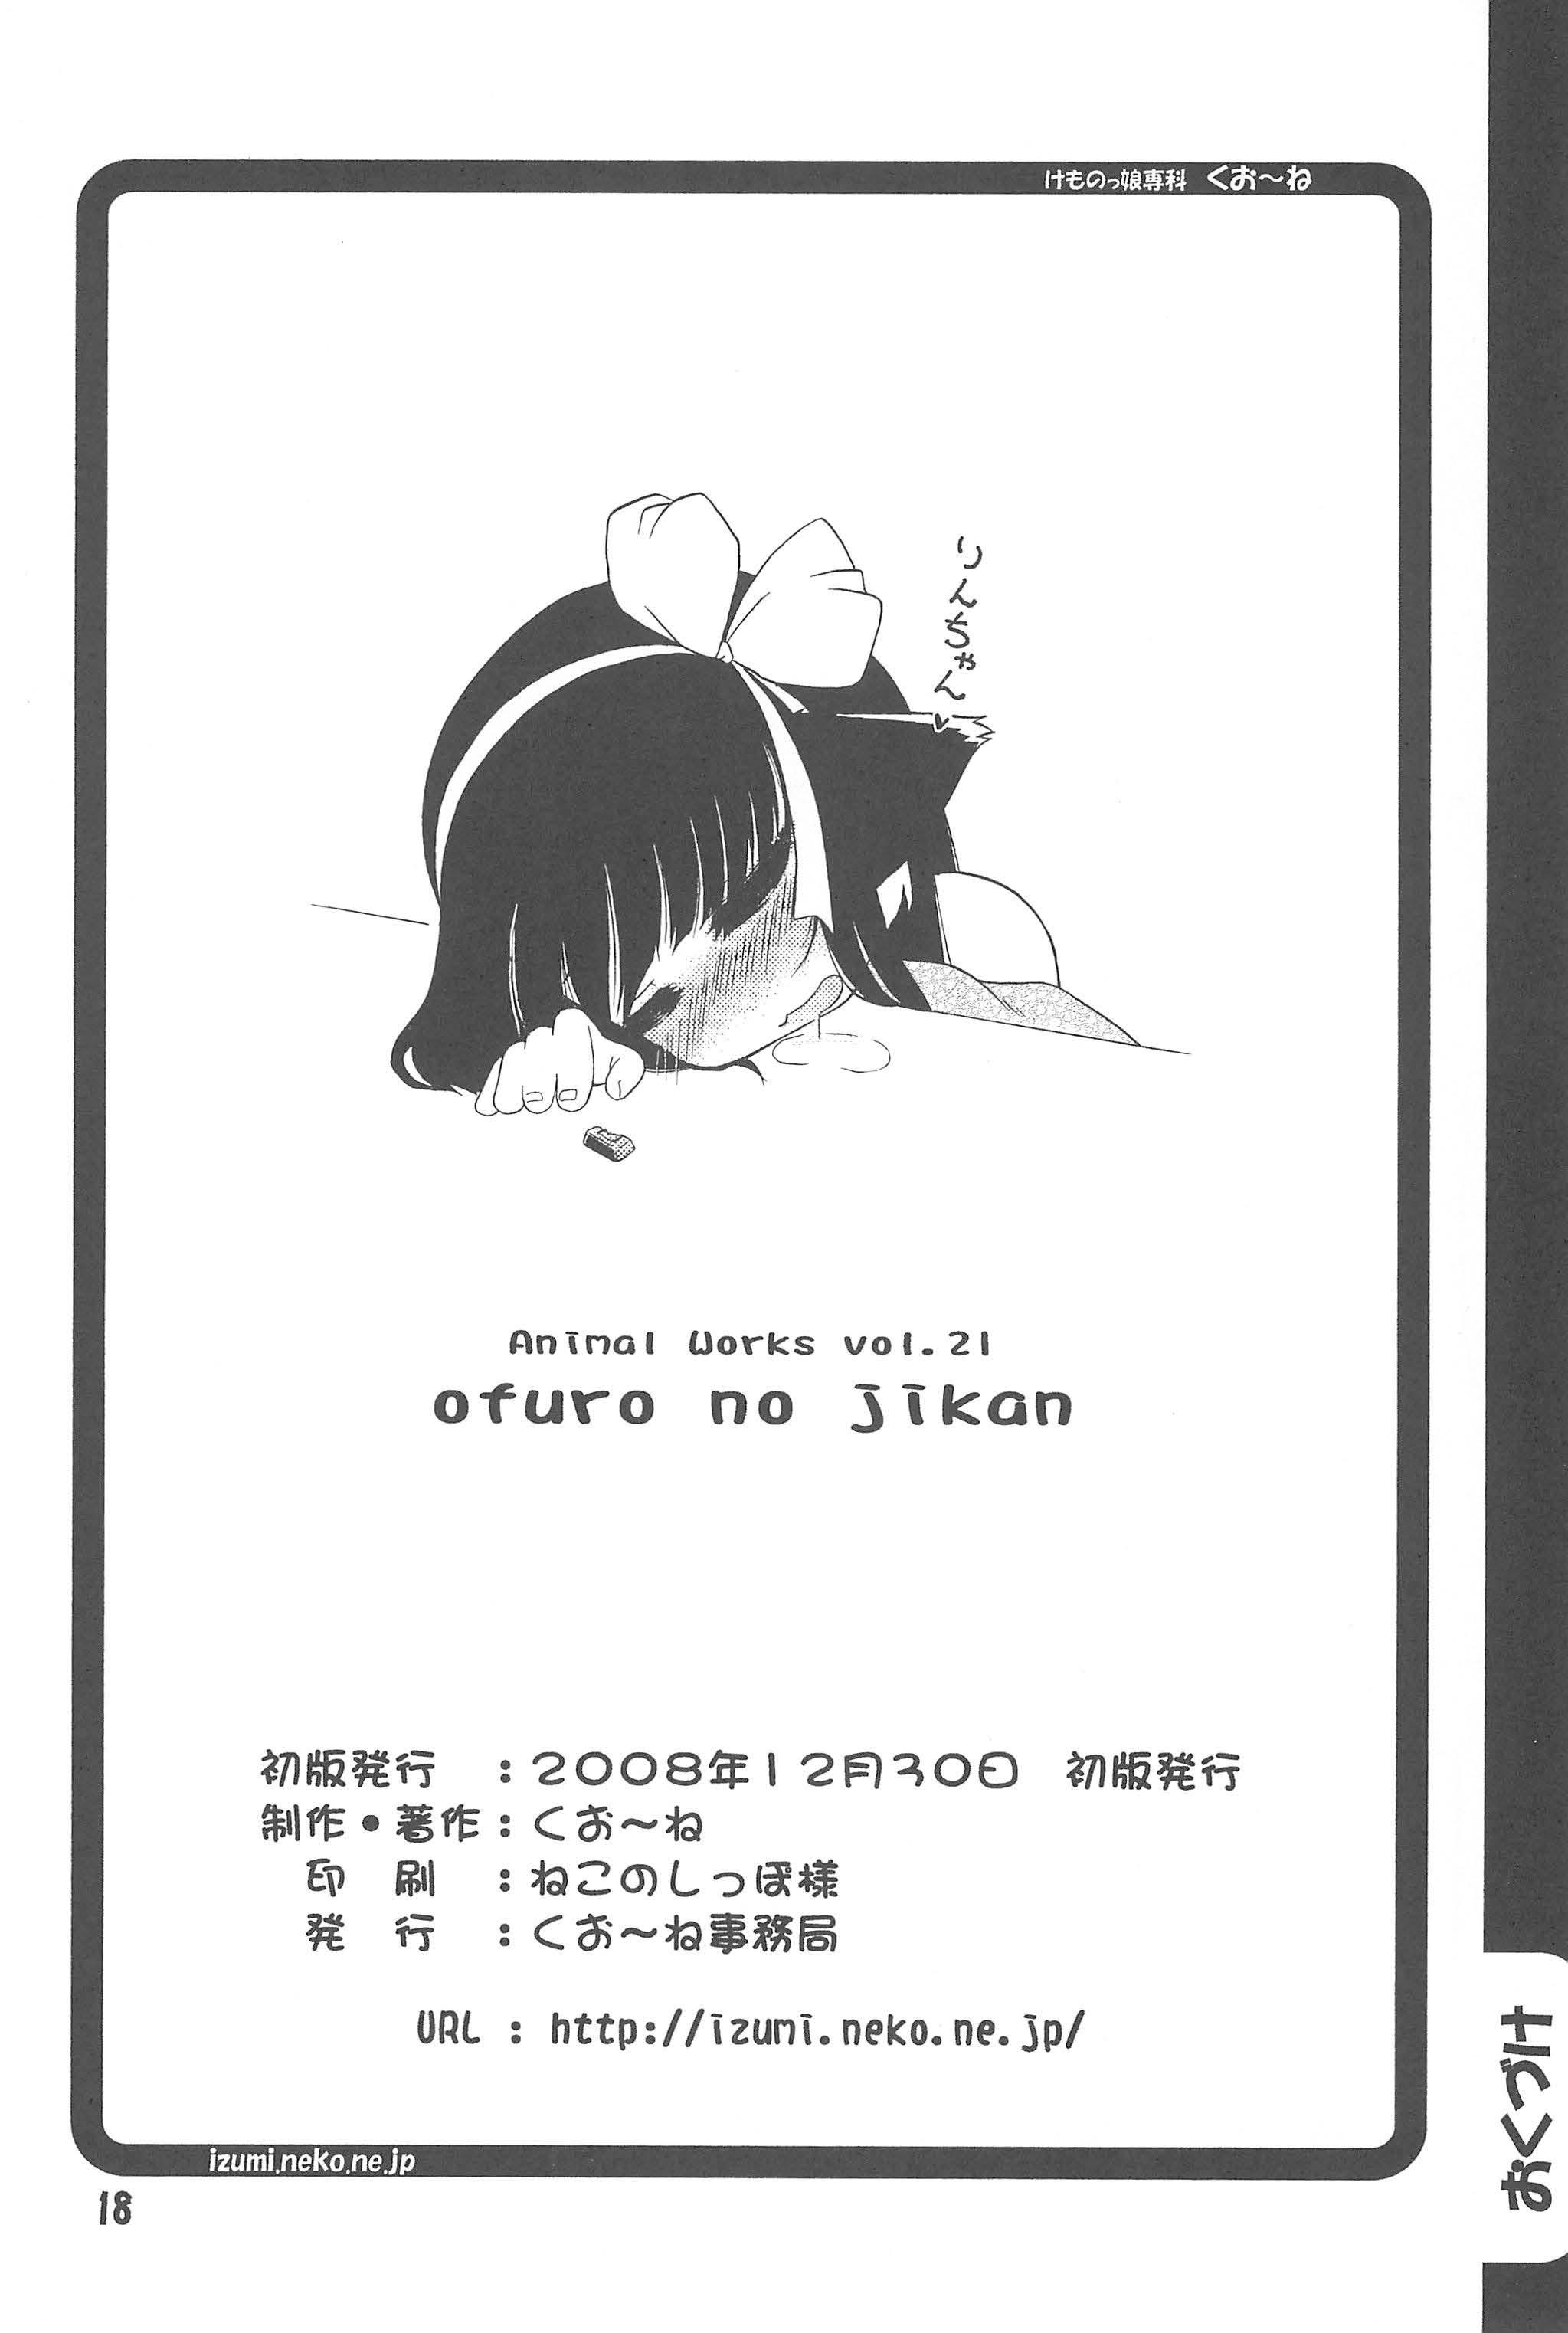 Fellatio Ofuro no Jikan - Kodomo no jikan Forwomen - Page 18